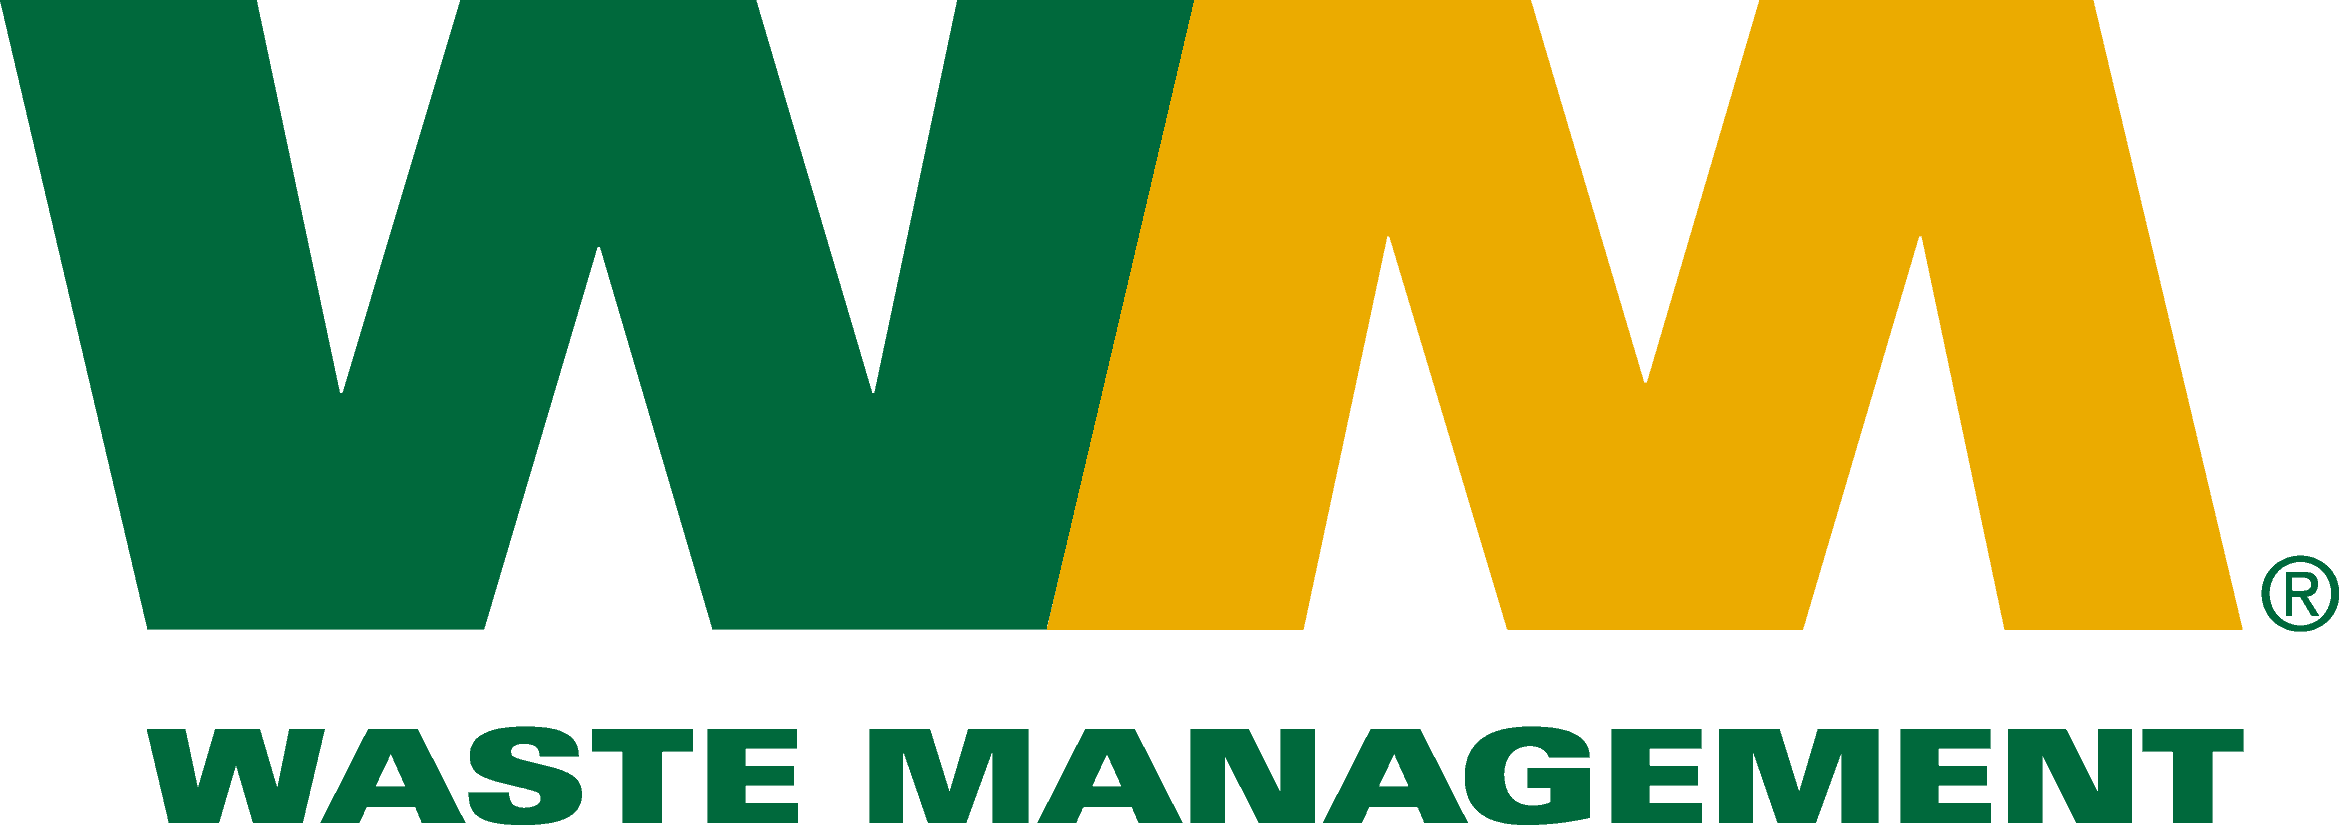 Waste-Management-Open